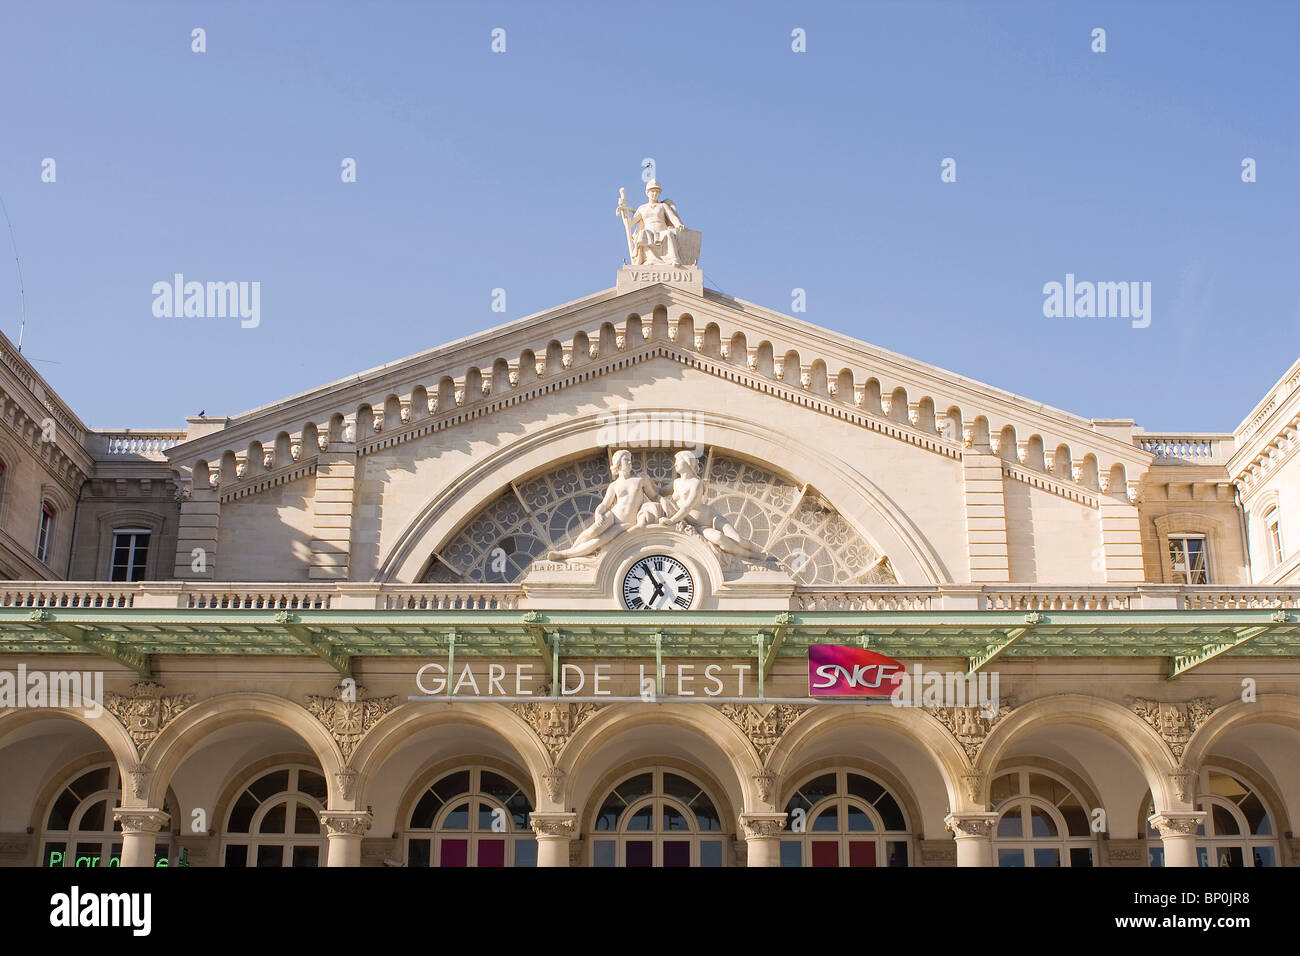 France, Paris, Gare de l'Est (railway station) Stock Photo